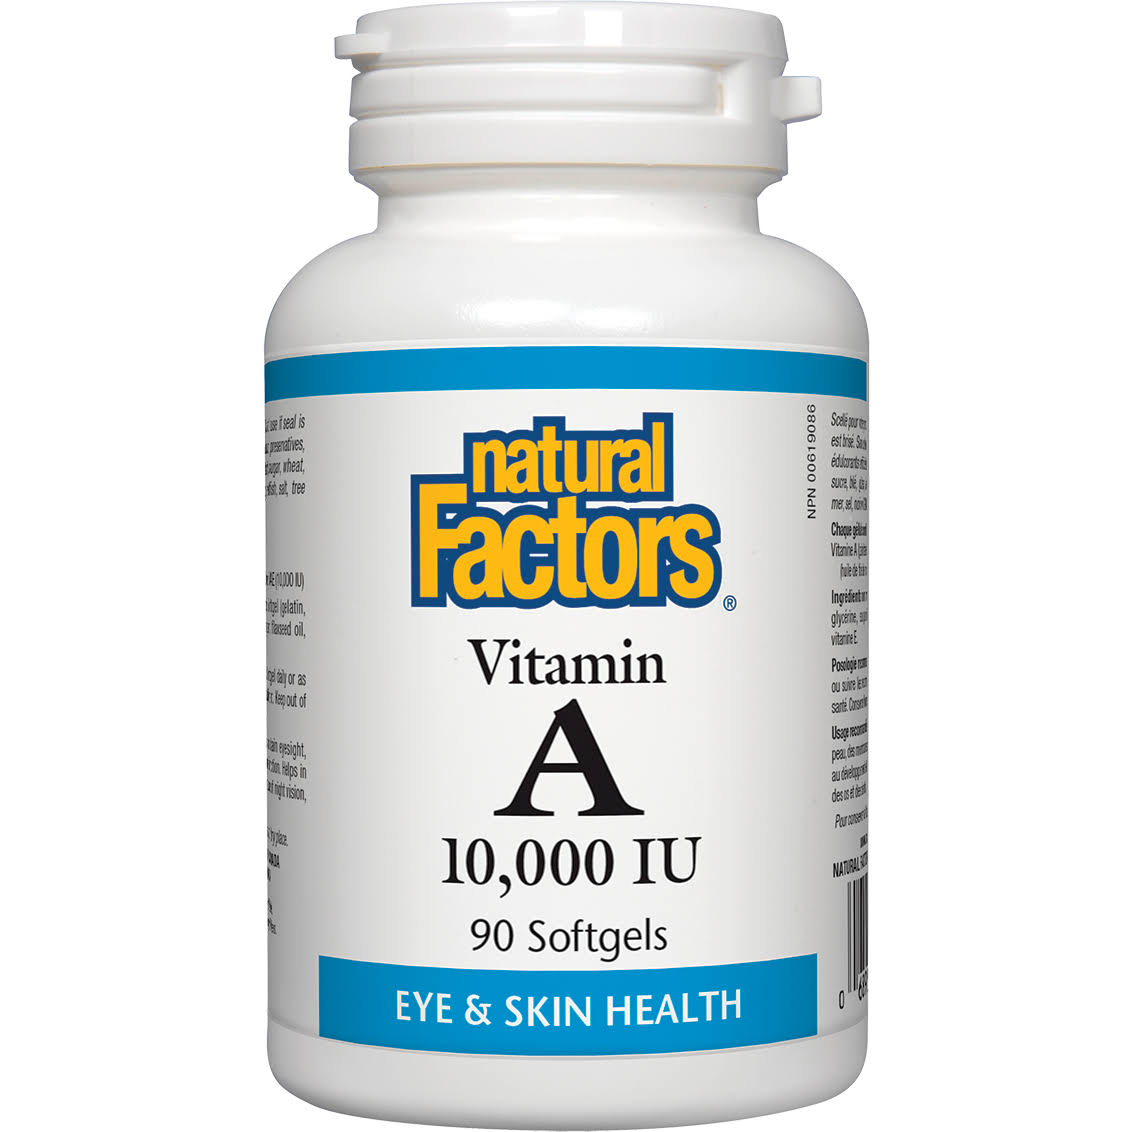 Natural Factors - Vitamin A 10,000 IU 90 Softgels